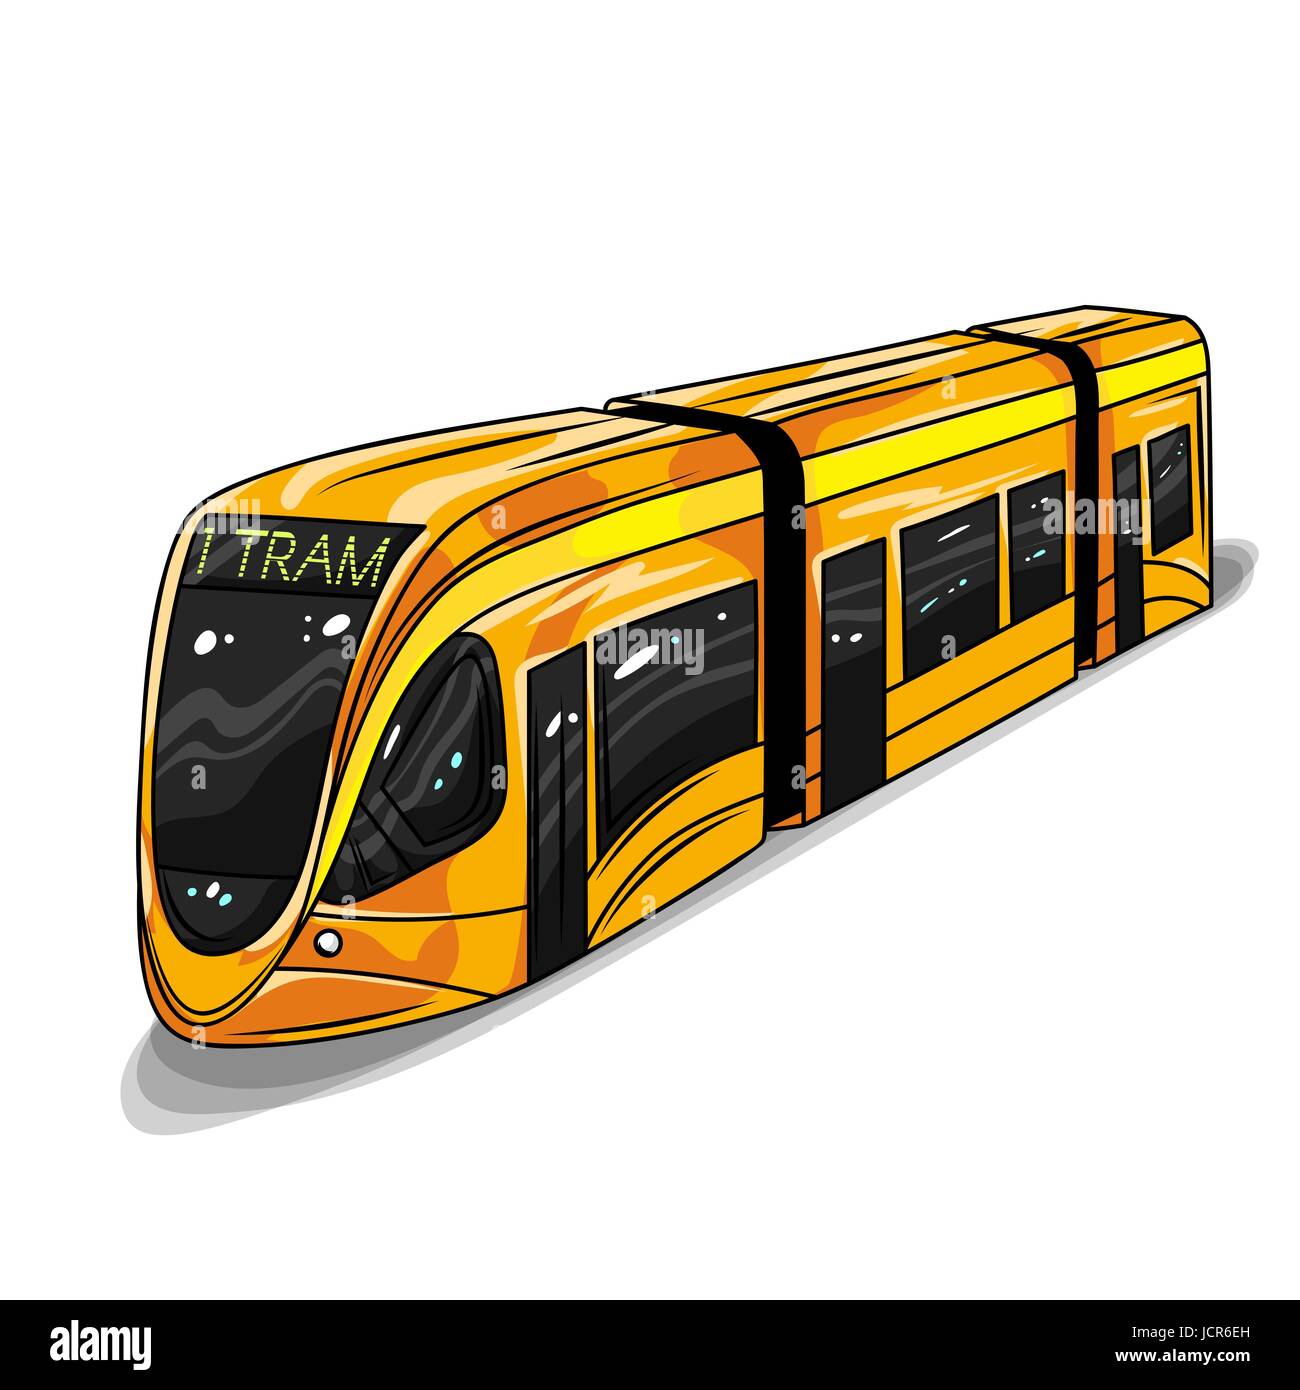 Vektor hand gezeichnete Darstellung der modernen Straßenbahnwagen. Illustration für print, Web. Stock Vektor